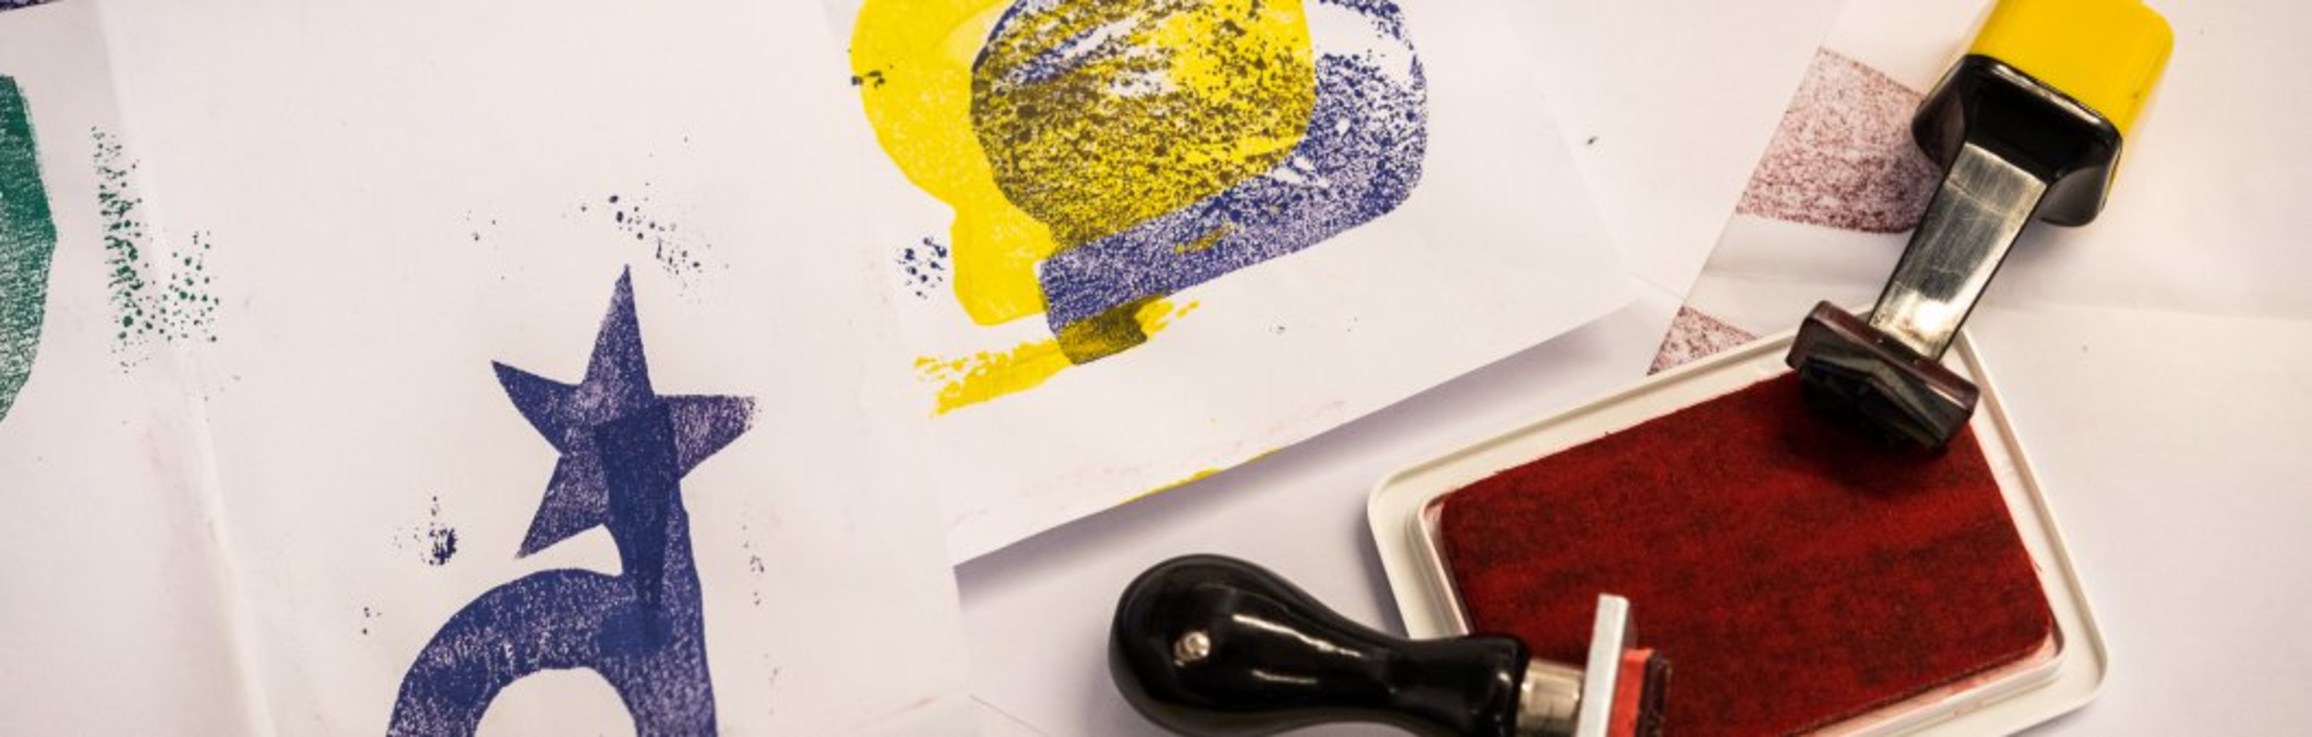 Visita dinamitzada al voltant de l’ obra de Joan Miro